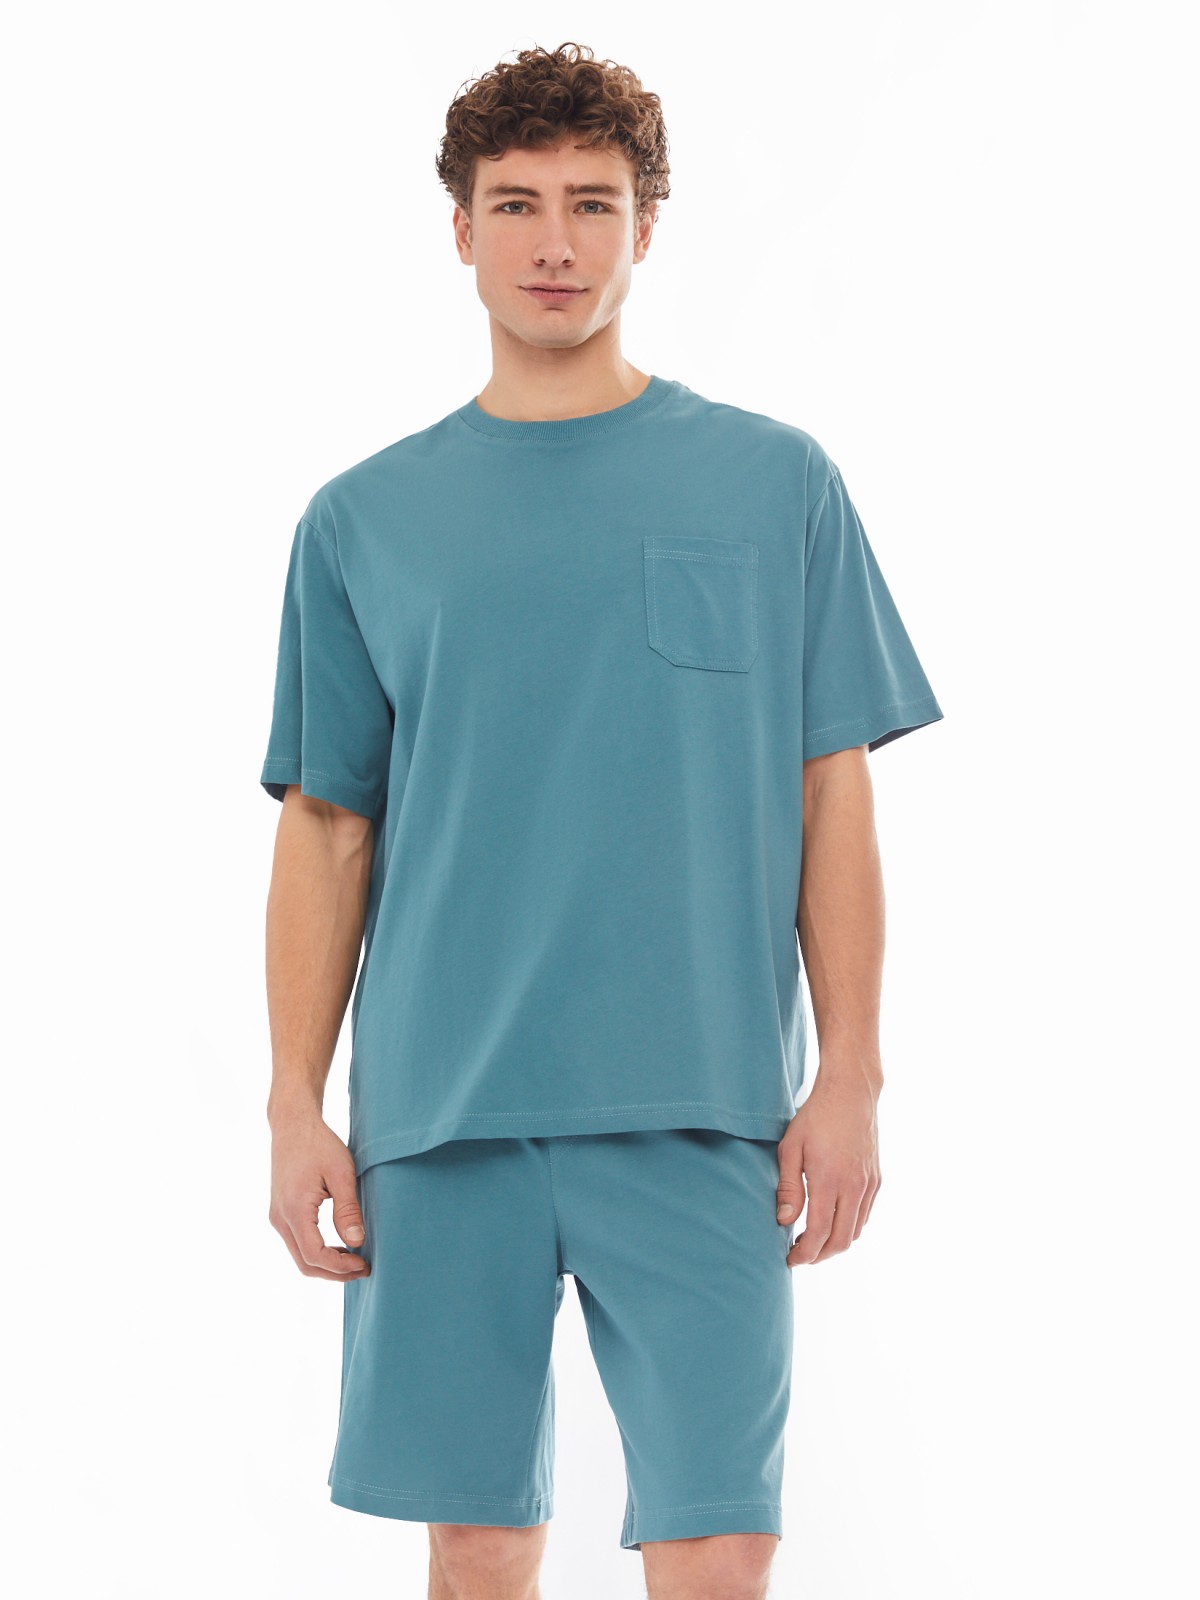 Домашний комплект из хлопка (футболка, шорты) zolla 61413870W041, цвет темно-бирюзовый, размер S